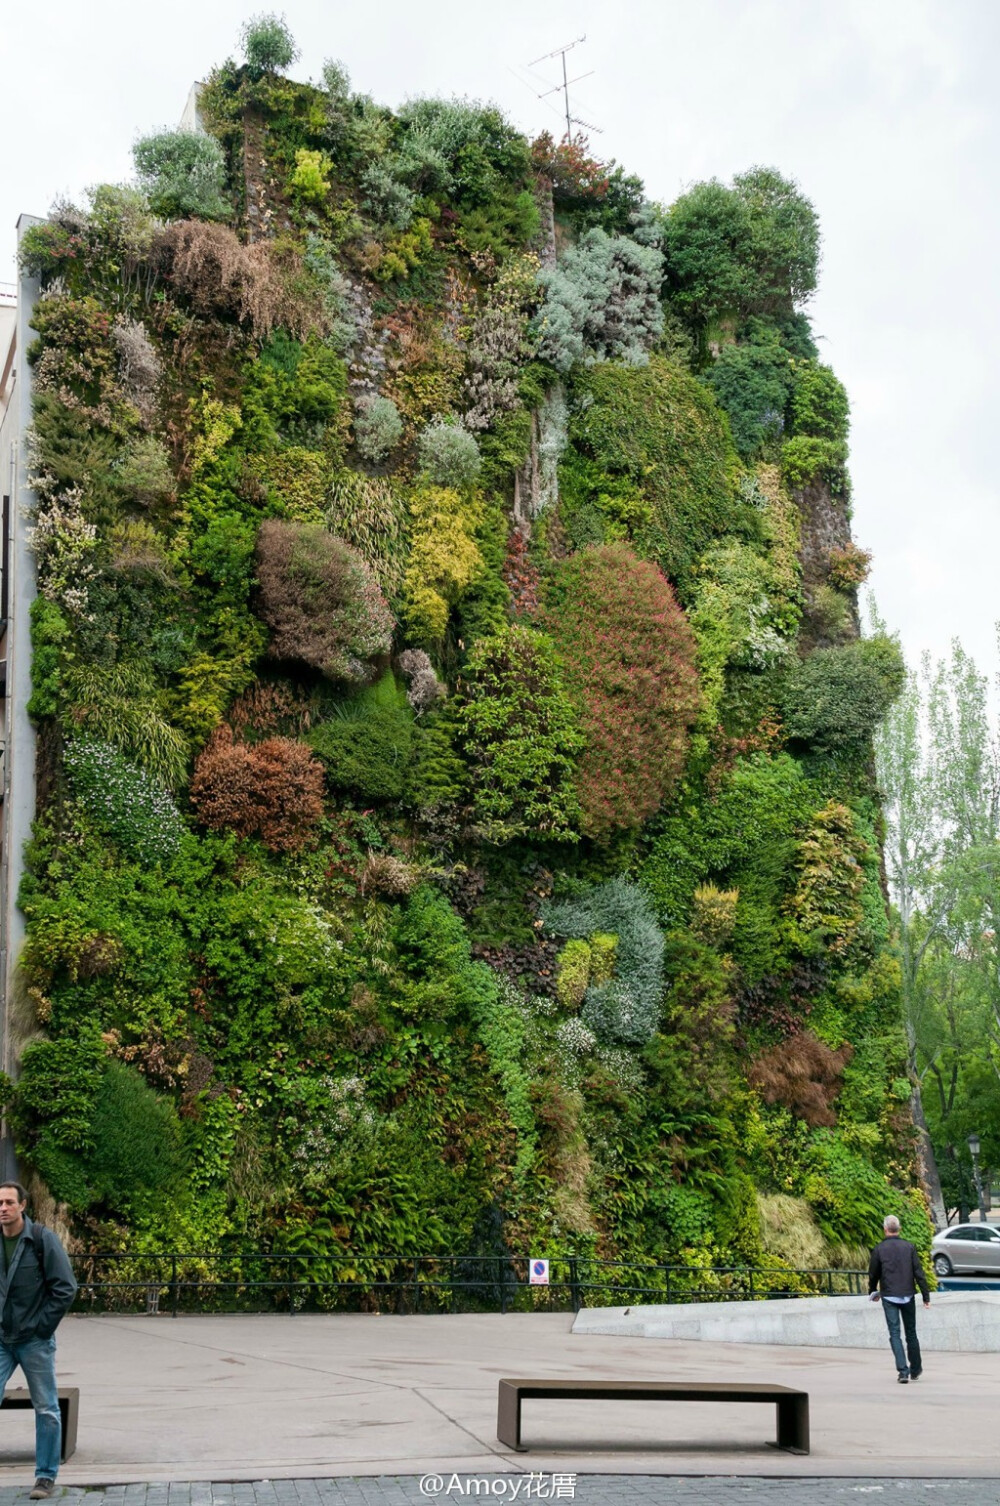 在西班牙马德里的CAIXAFORUM文化艺术中心，有着一个著名的大型垂直花园。由法国植物学家Patrick Blanc设计，这面植物墙跨度约1500平方英尺，生长着约250种植物。植物的种植也极有讲究，在不同季节呈现出不同的色彩和状态，让这个艺术中心的广场总是生机勃勃。图片来自网络的搜集。